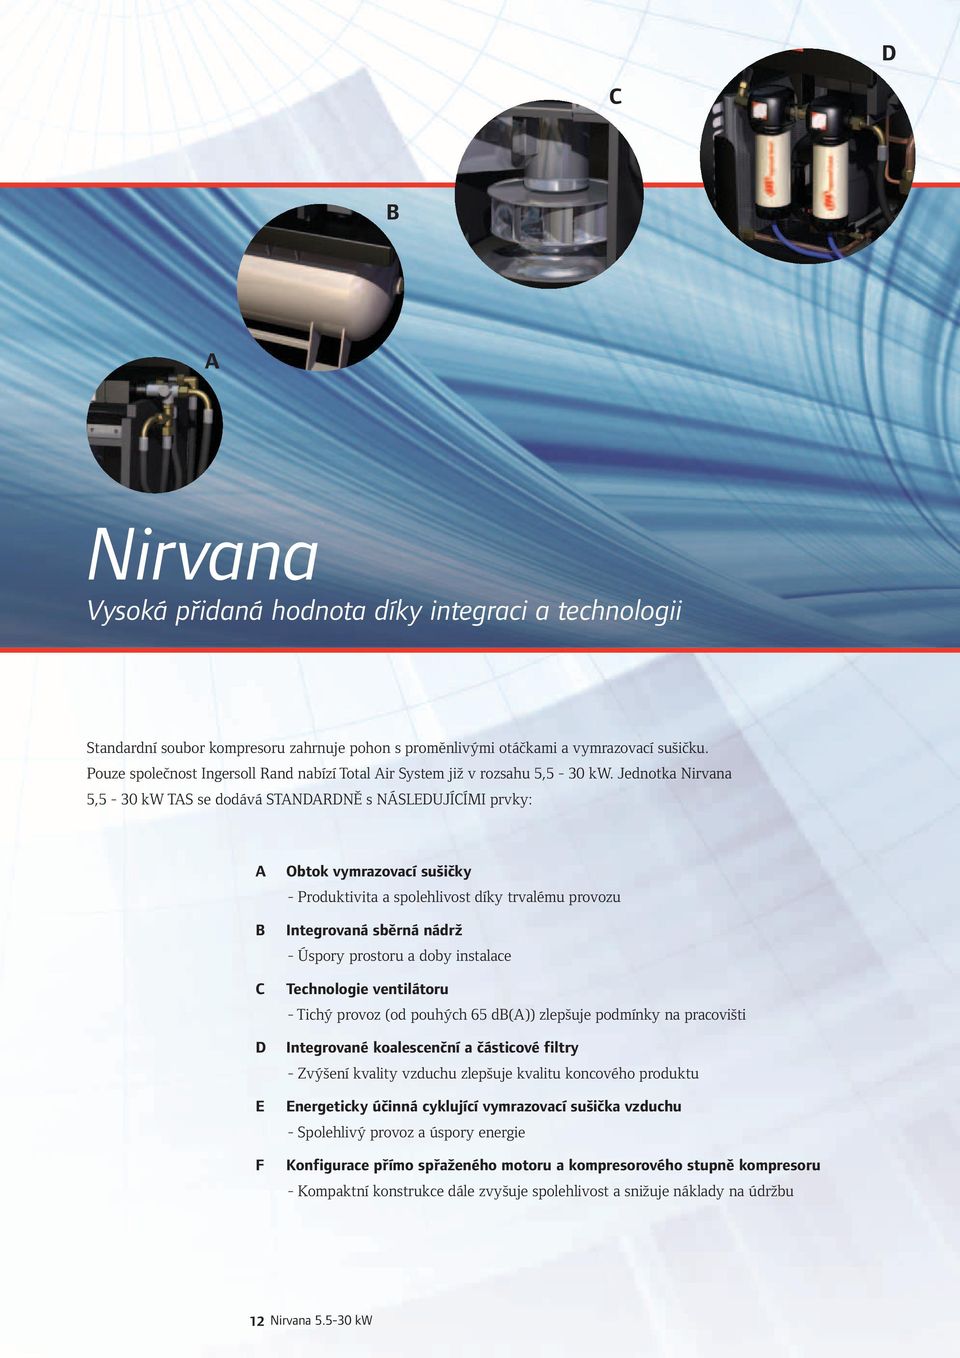 Jednotka Nirvana 5,5-30 kw TAS se dodává STANDARDNĚ s NÁSLEDUJÍCÍMI prvky: A B C D E F Obtok vymrazovací sušičky - Produktivita a spolehlivost díky trvalému provozu Integrovaná sběrná nádrž - Úspory